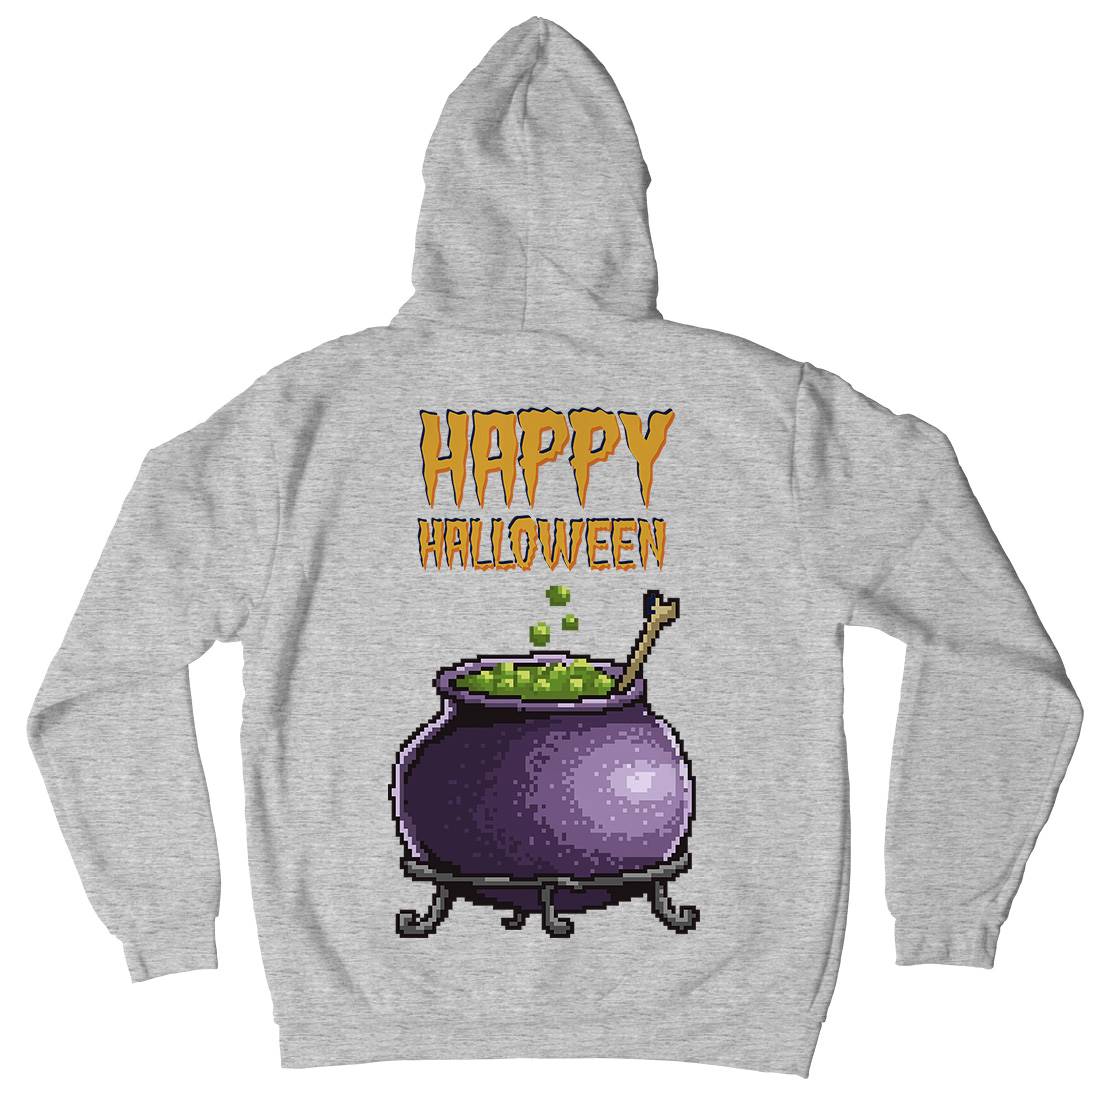 Happy Halloween Kids Crew Neck Hoodie Horror B909